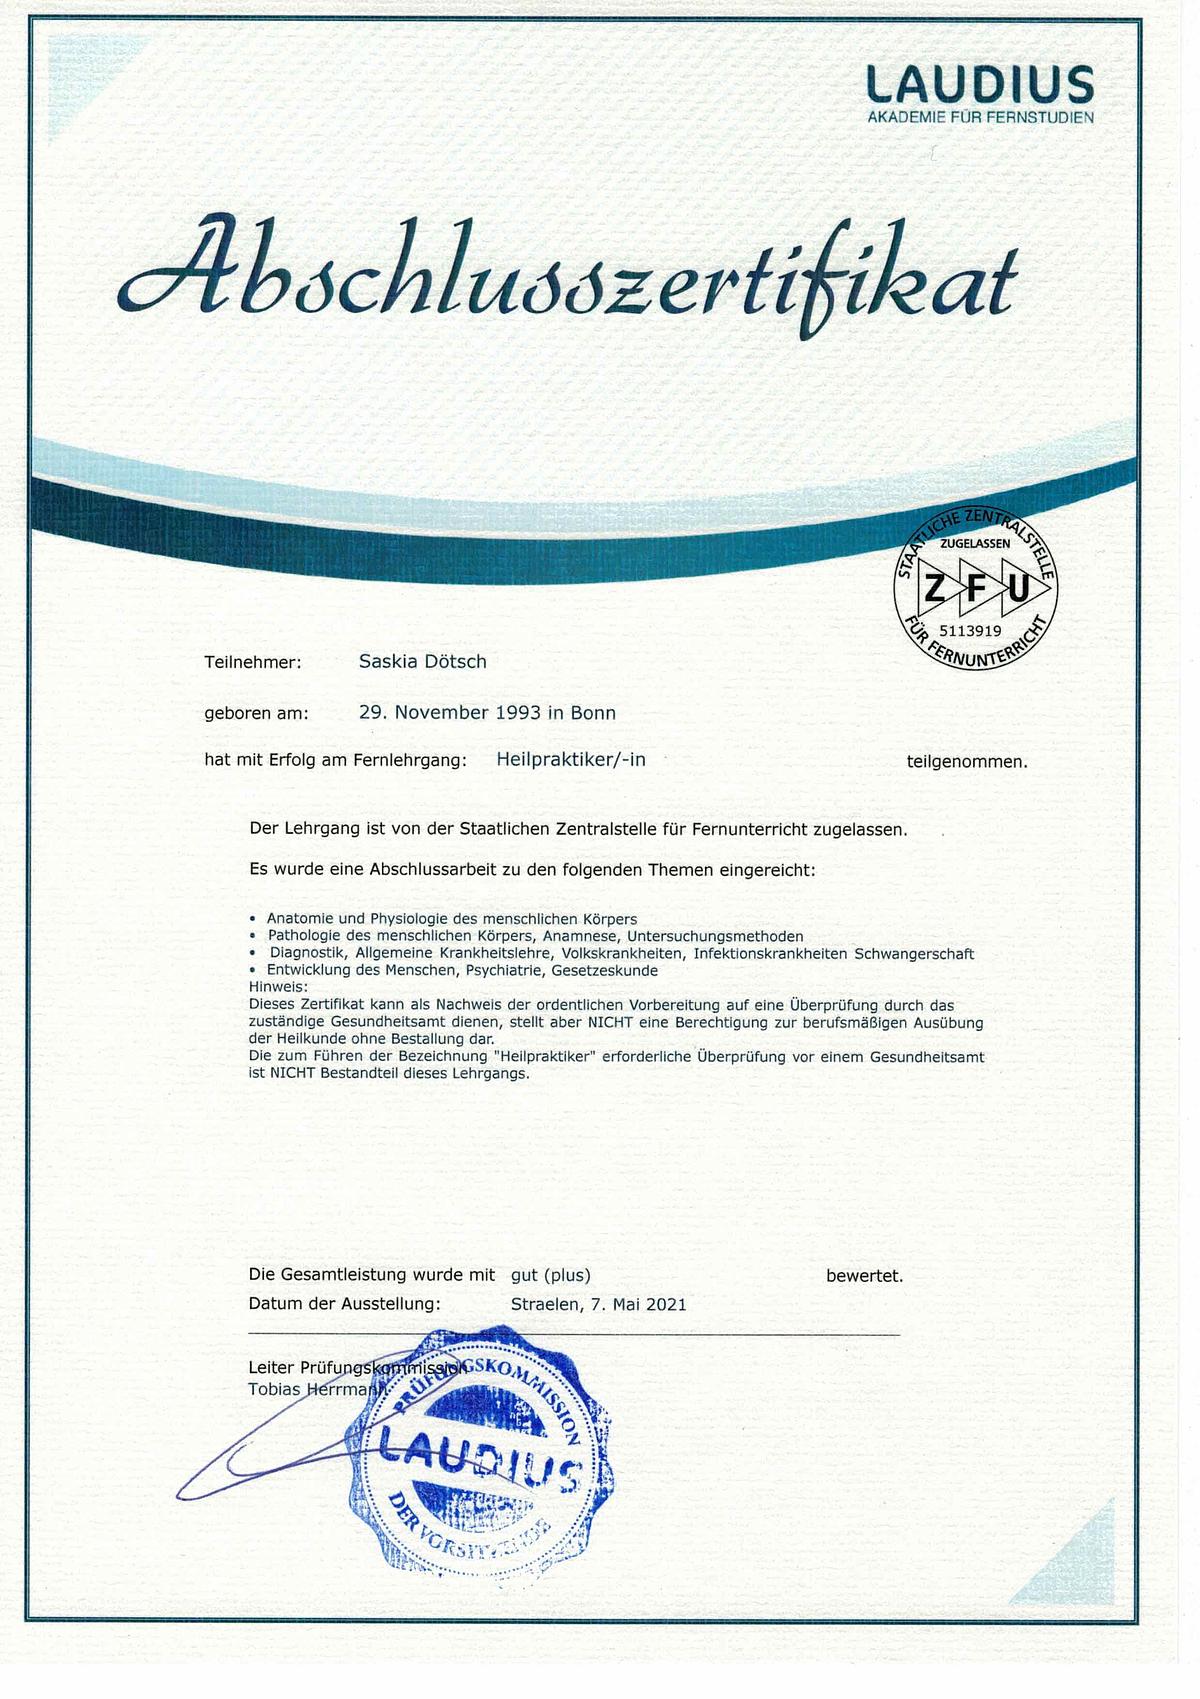 Abschlusszertifikat der Ausbildung zum Heilpraktiker in Kiel